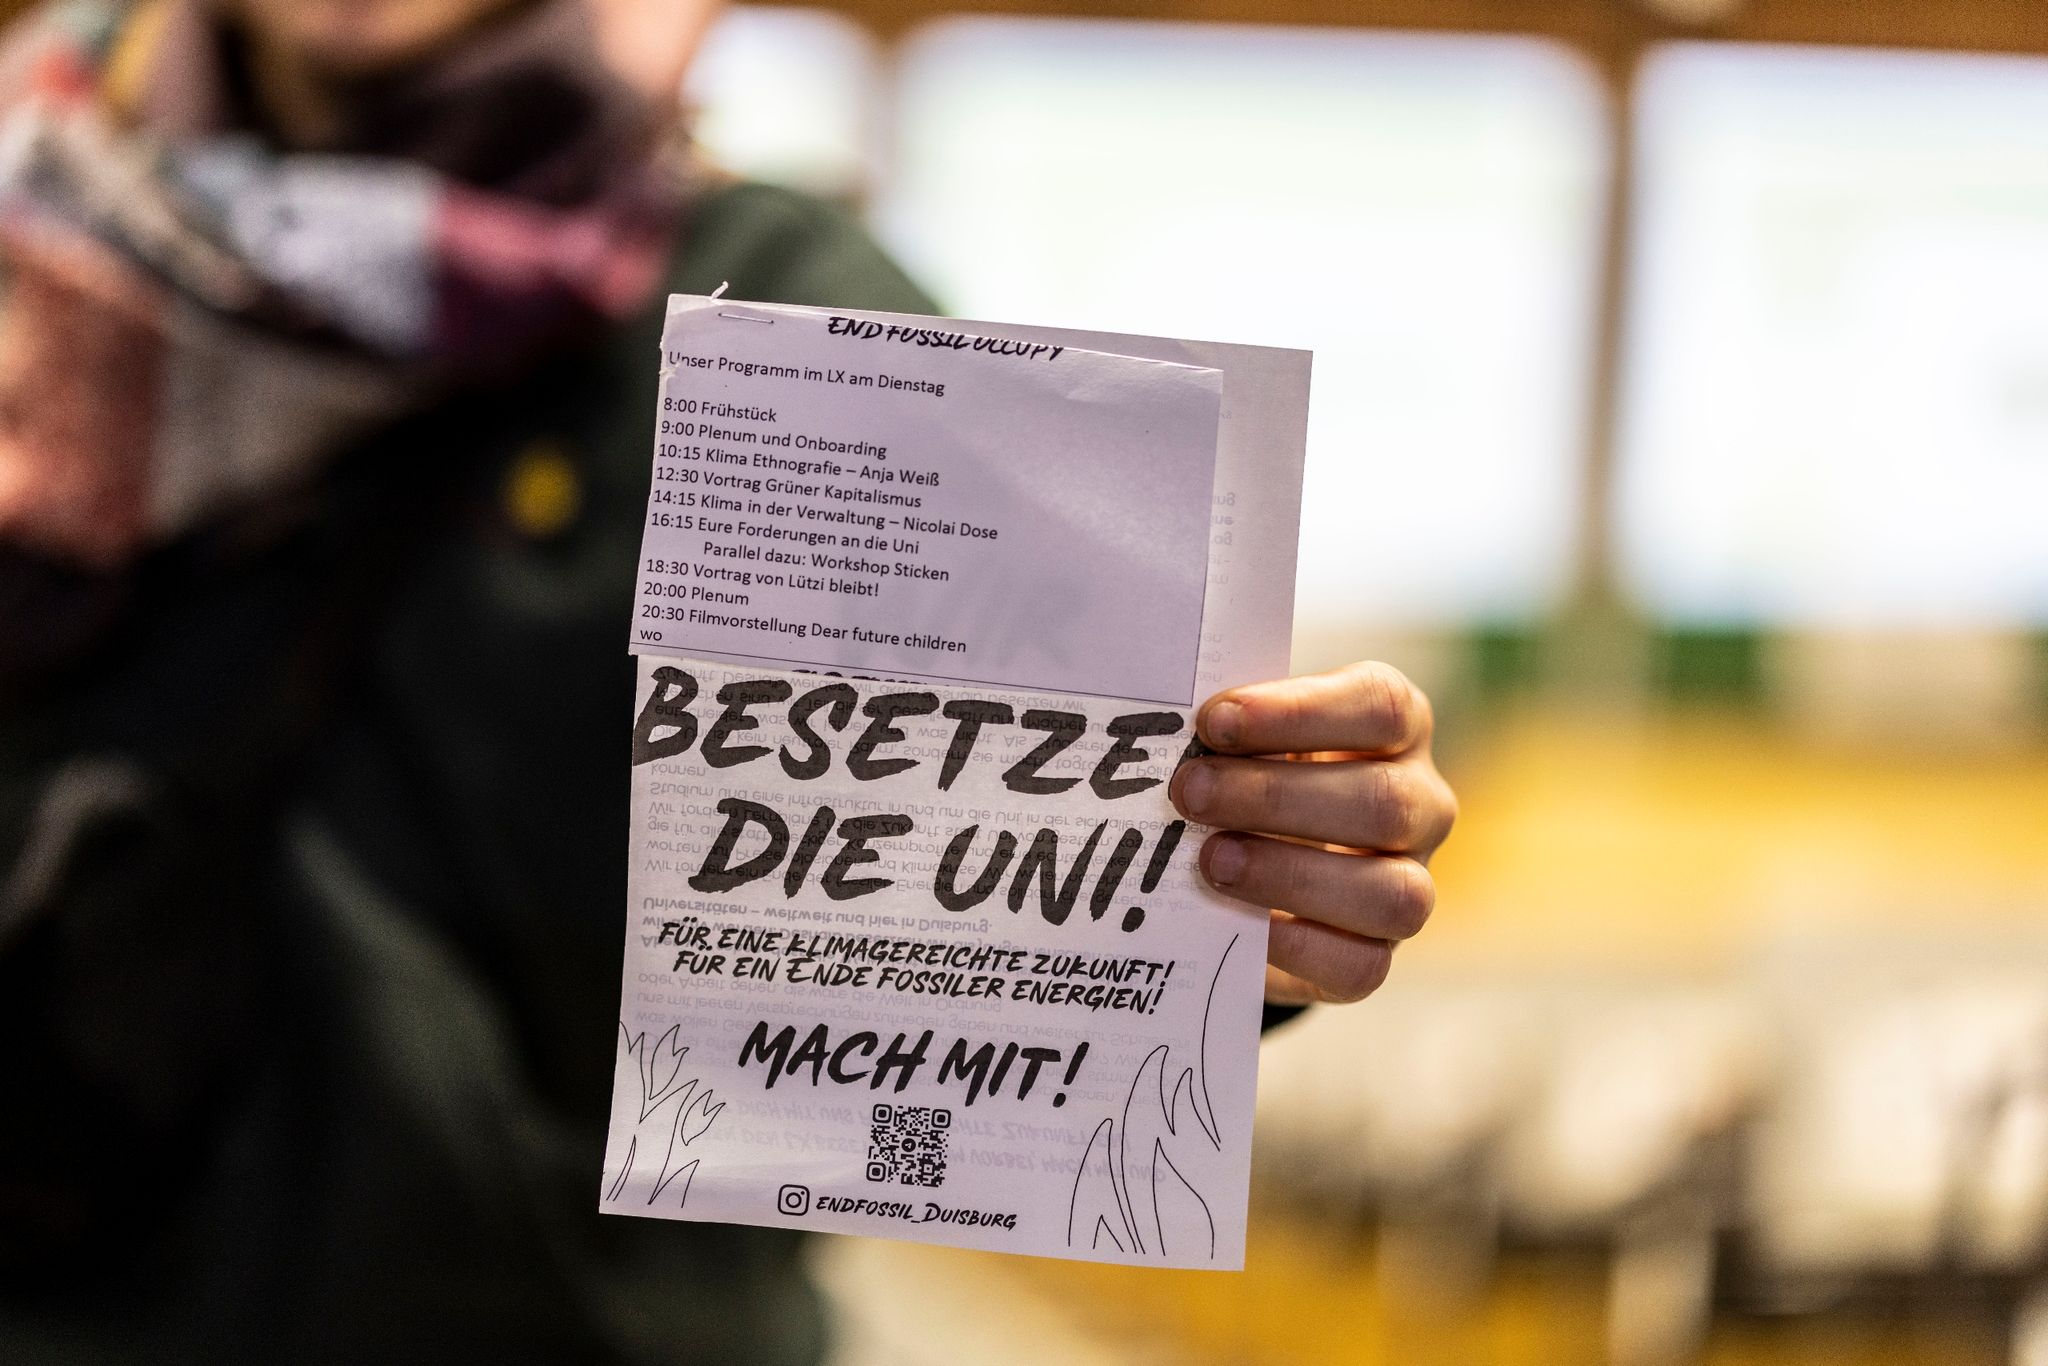 Eine Aktivistin hält einen Flyer in ihrer Hand mit der Aufschrift "Besetze die Uni!".